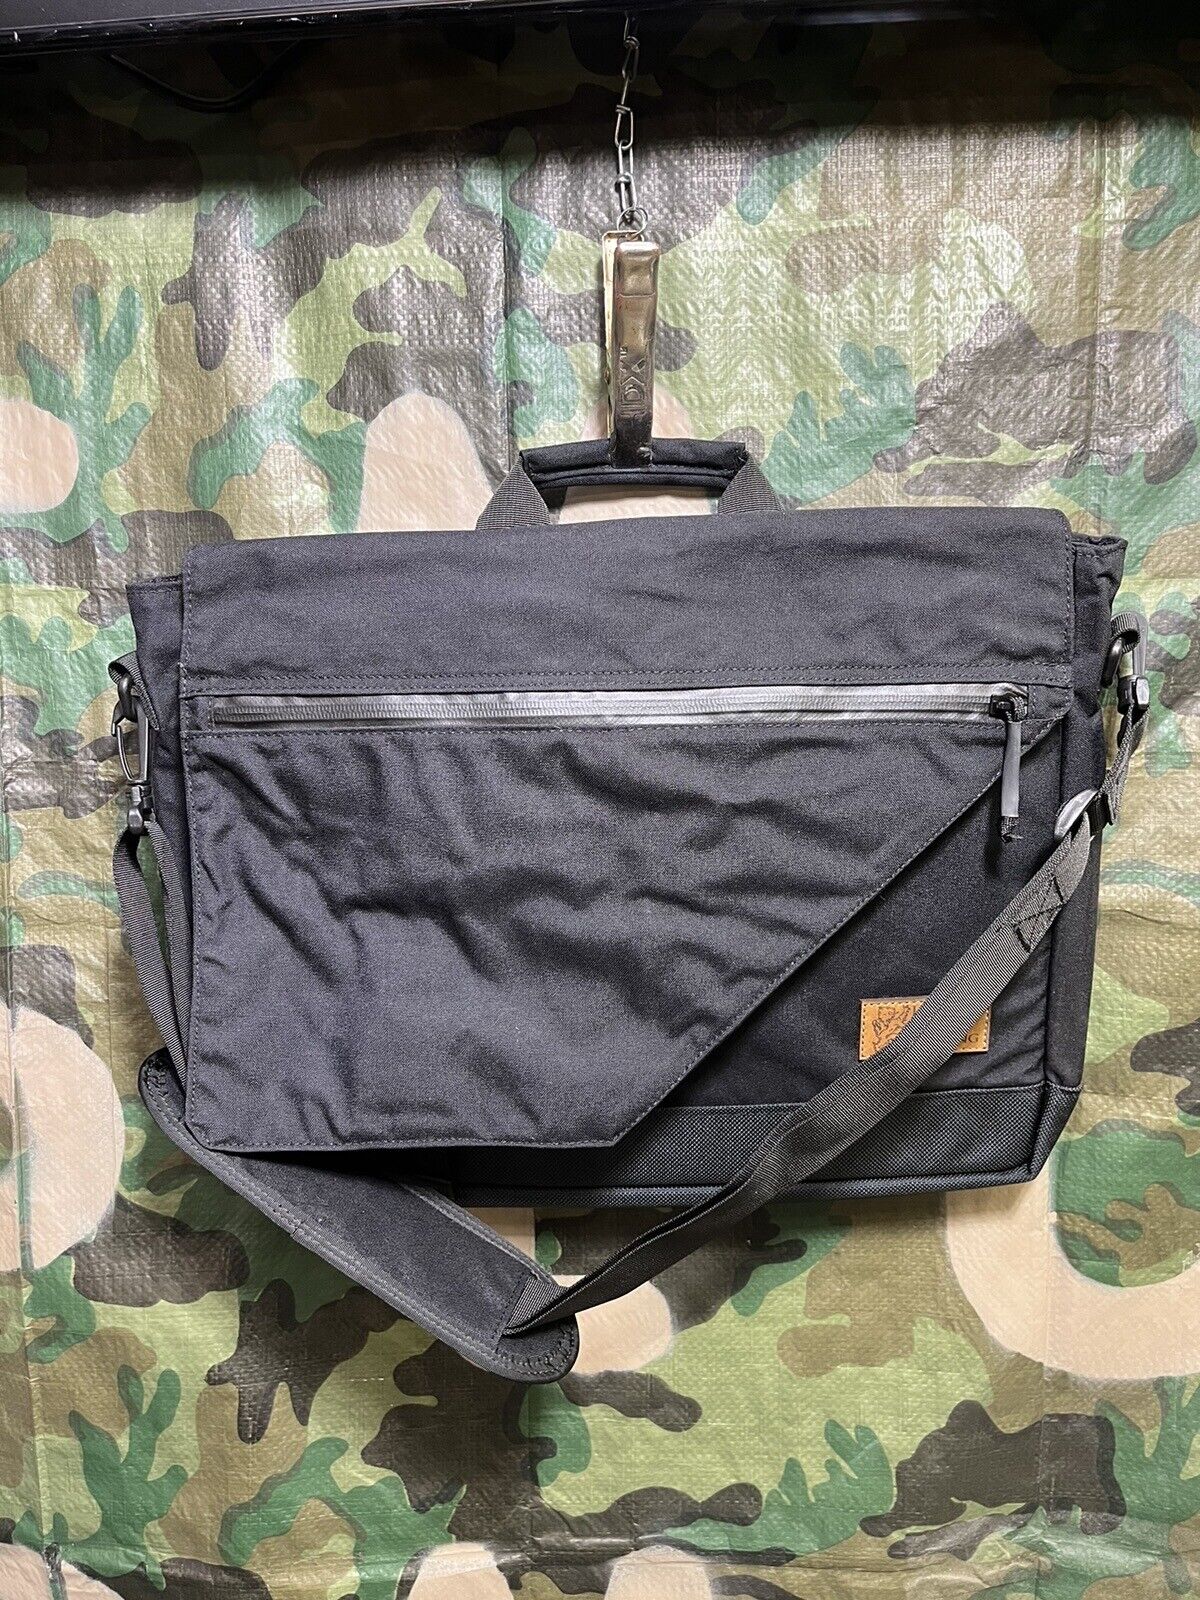 LBT-8001A Courier Messenger Shoulder Bag